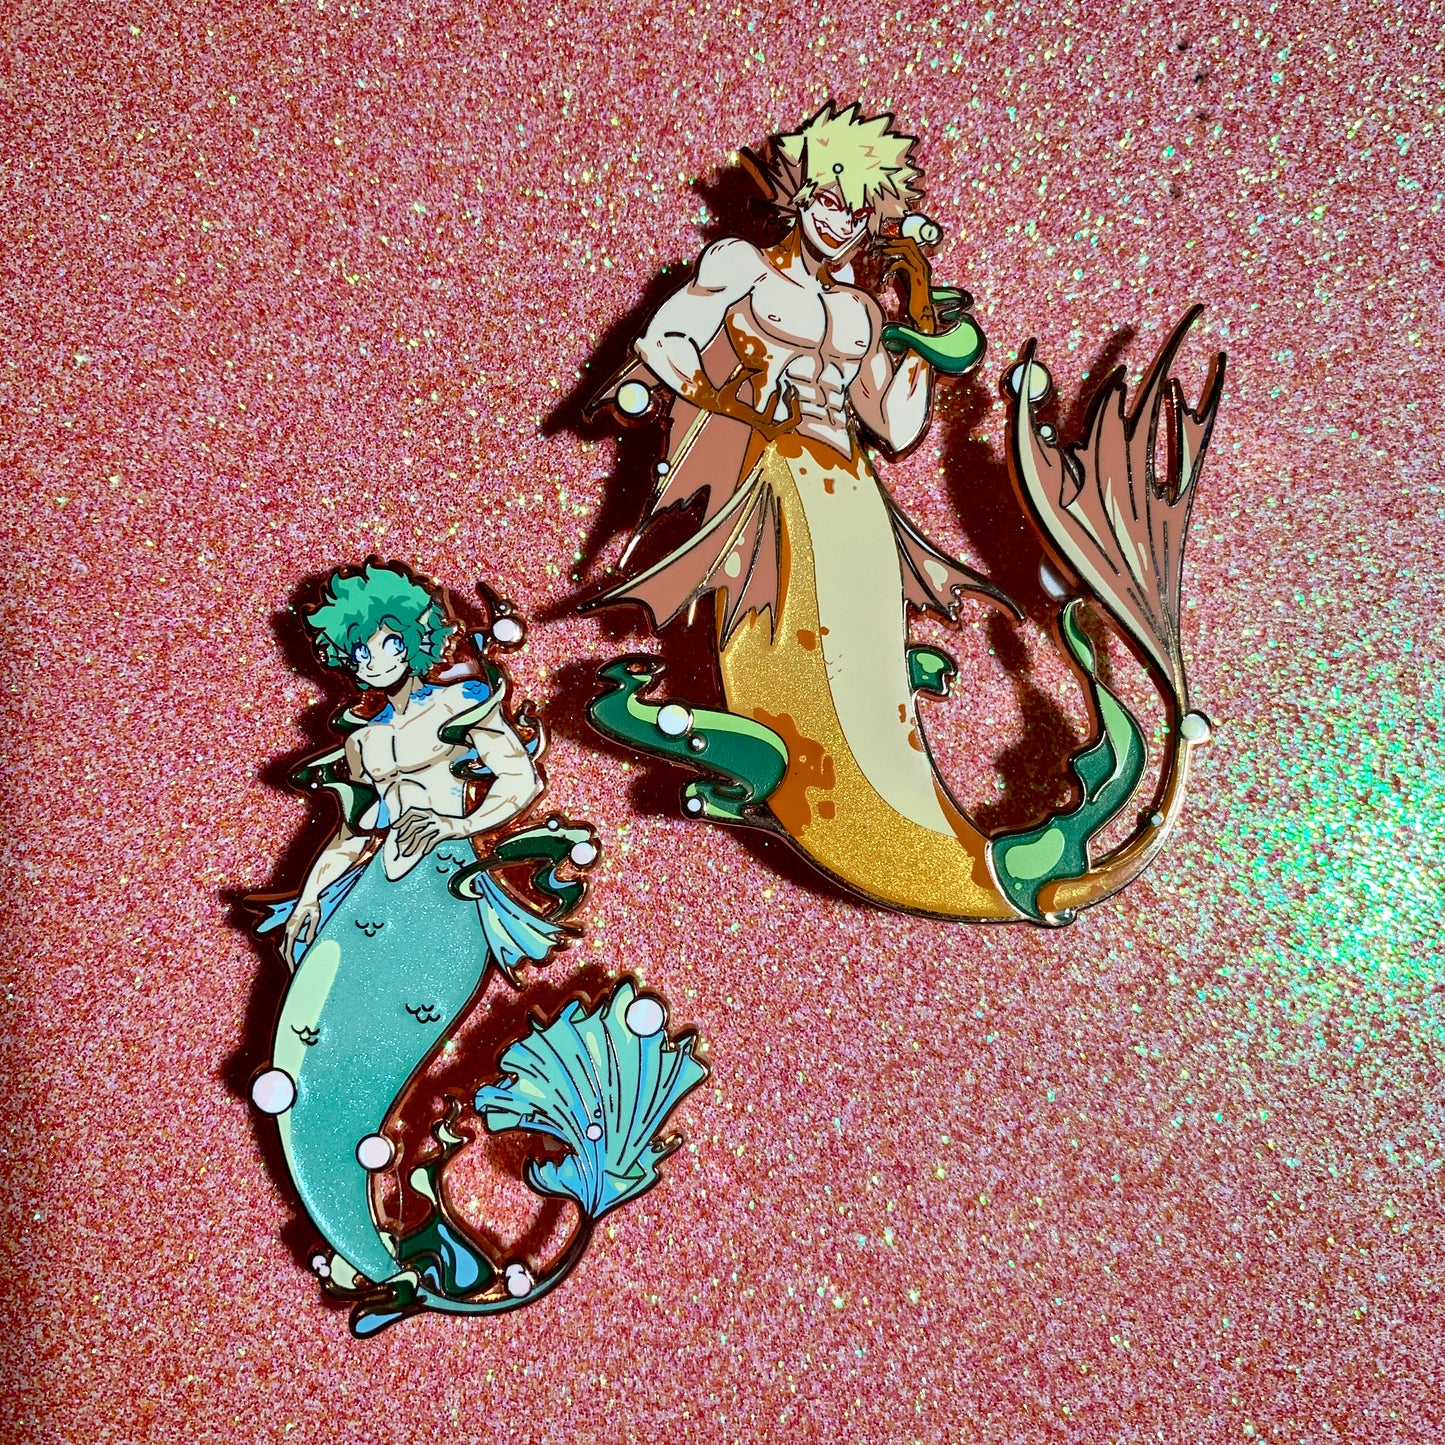 Bakugo and Deku Mermaids